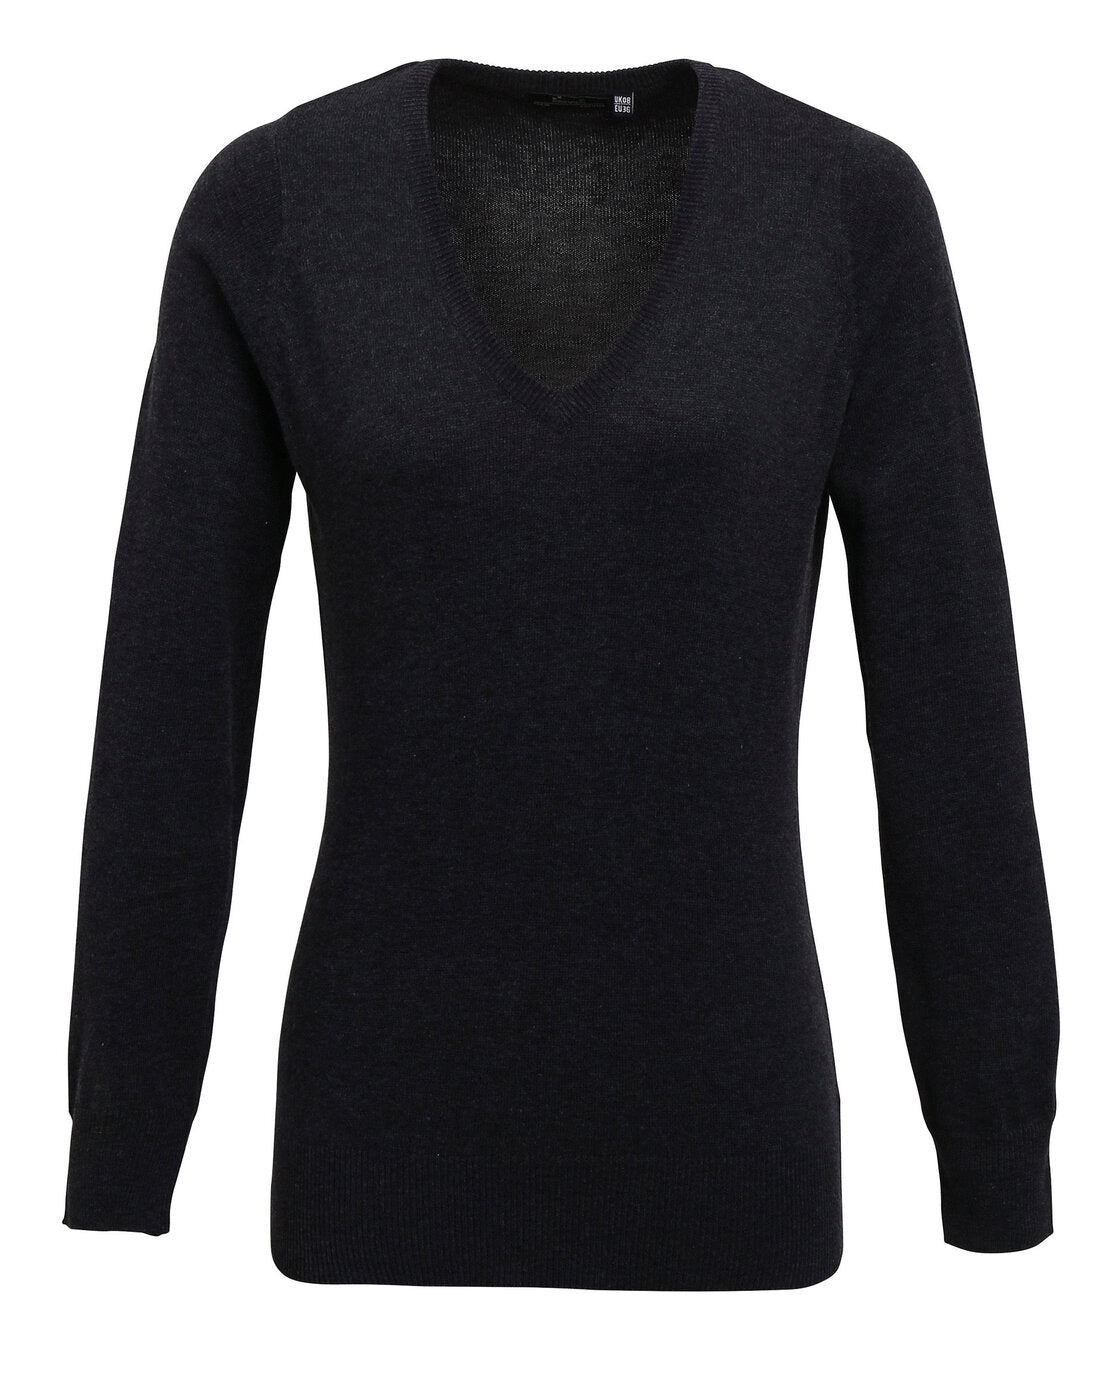 Premier Women's Knitted V-Neck Sweater